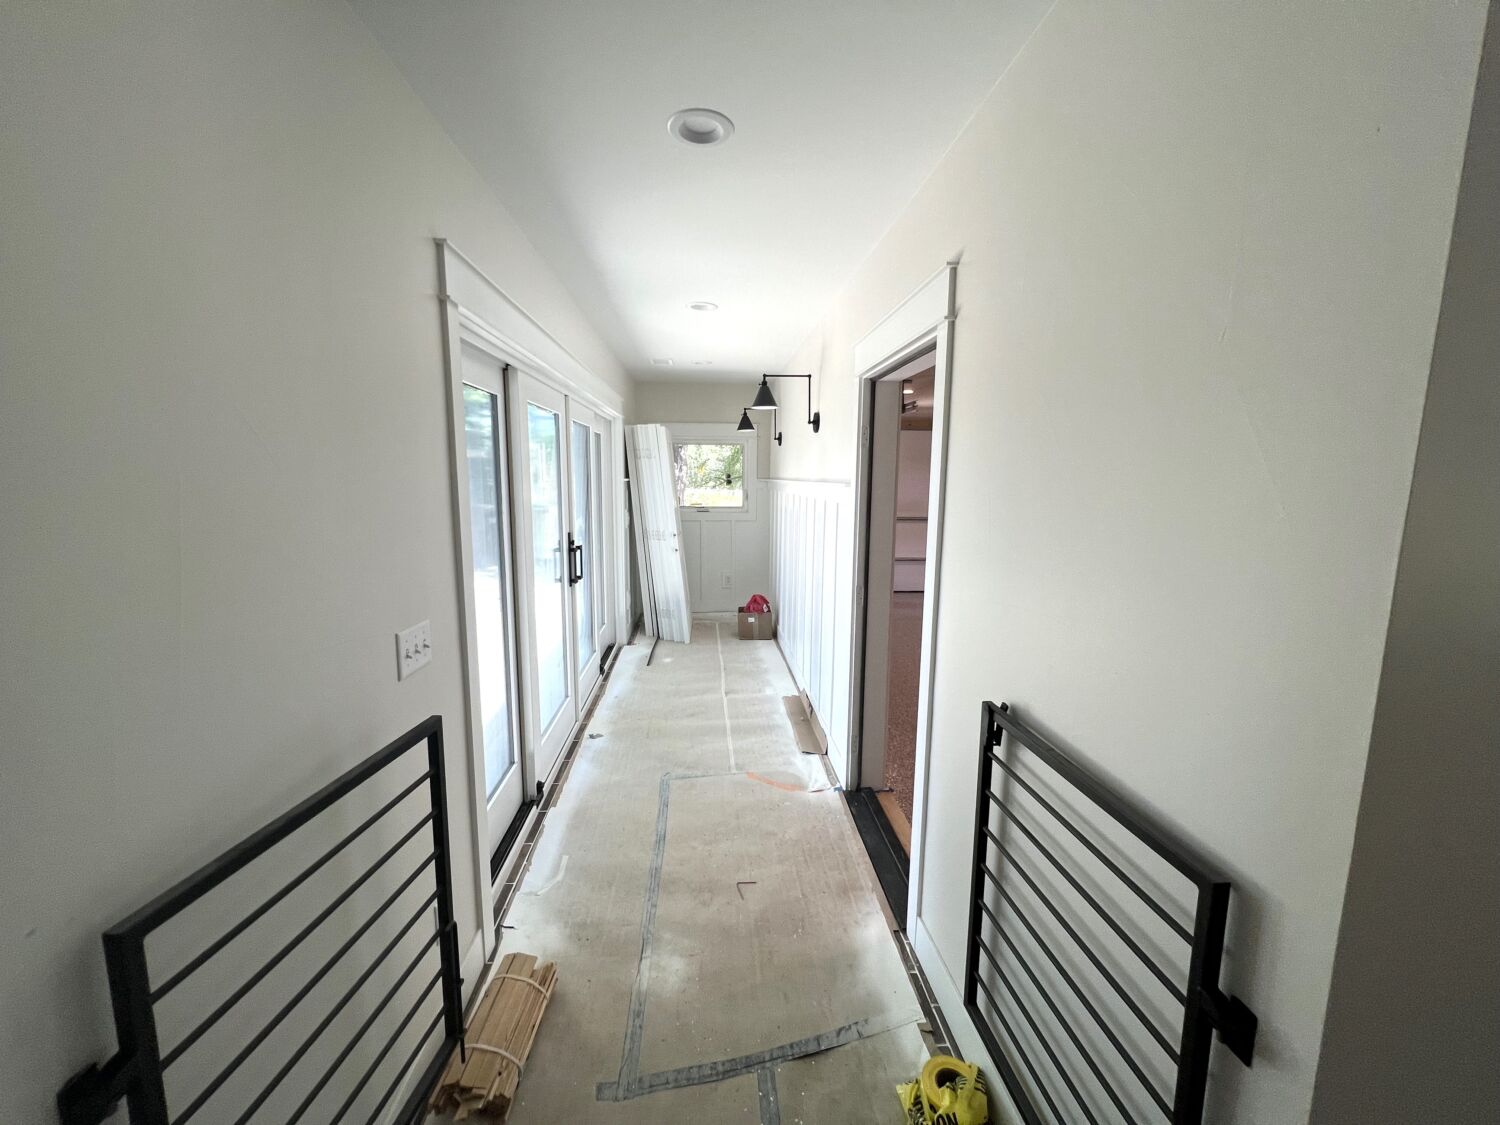 home-remodel-mudroom-hallway-gates-for-dog-progress